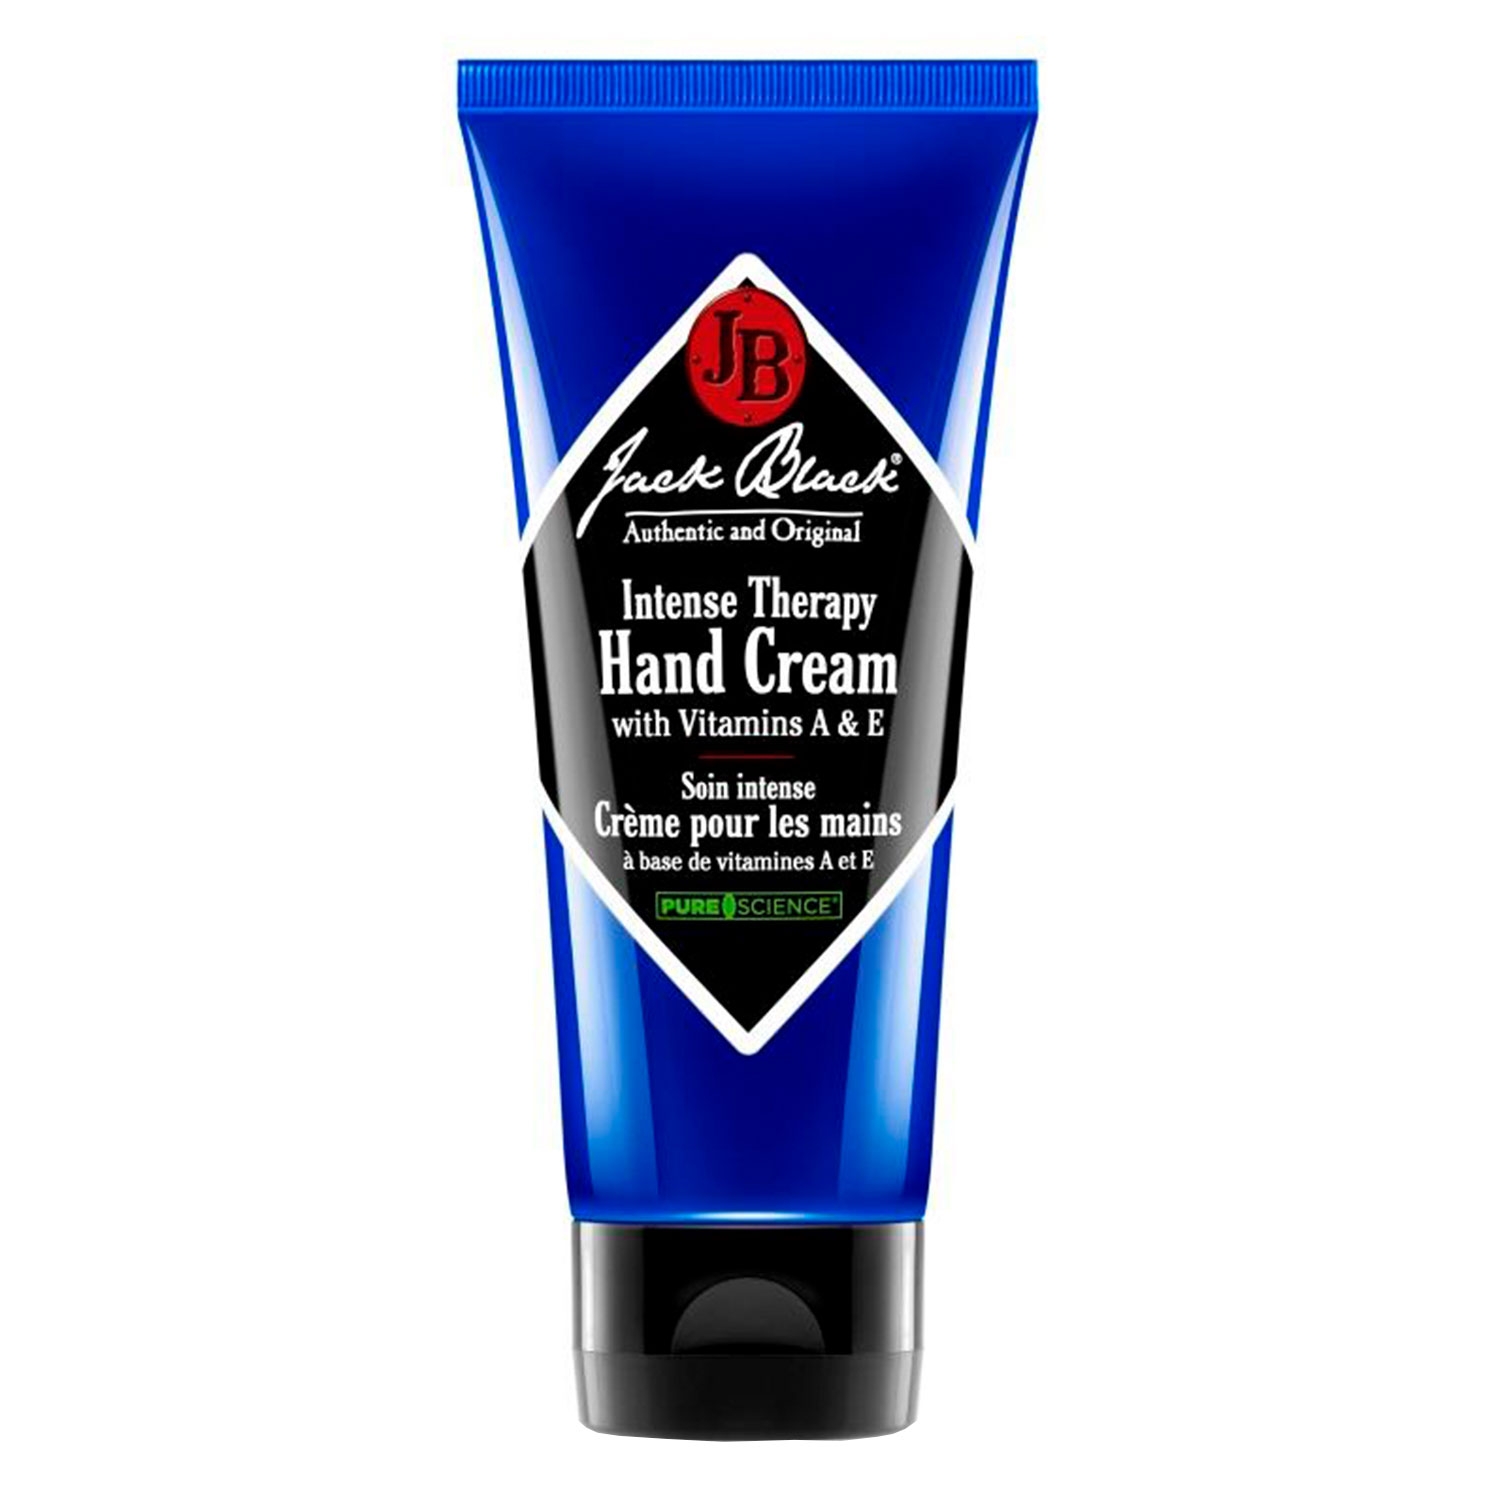 Produktbild von Jack Black - Intense Therapy Hand Cream